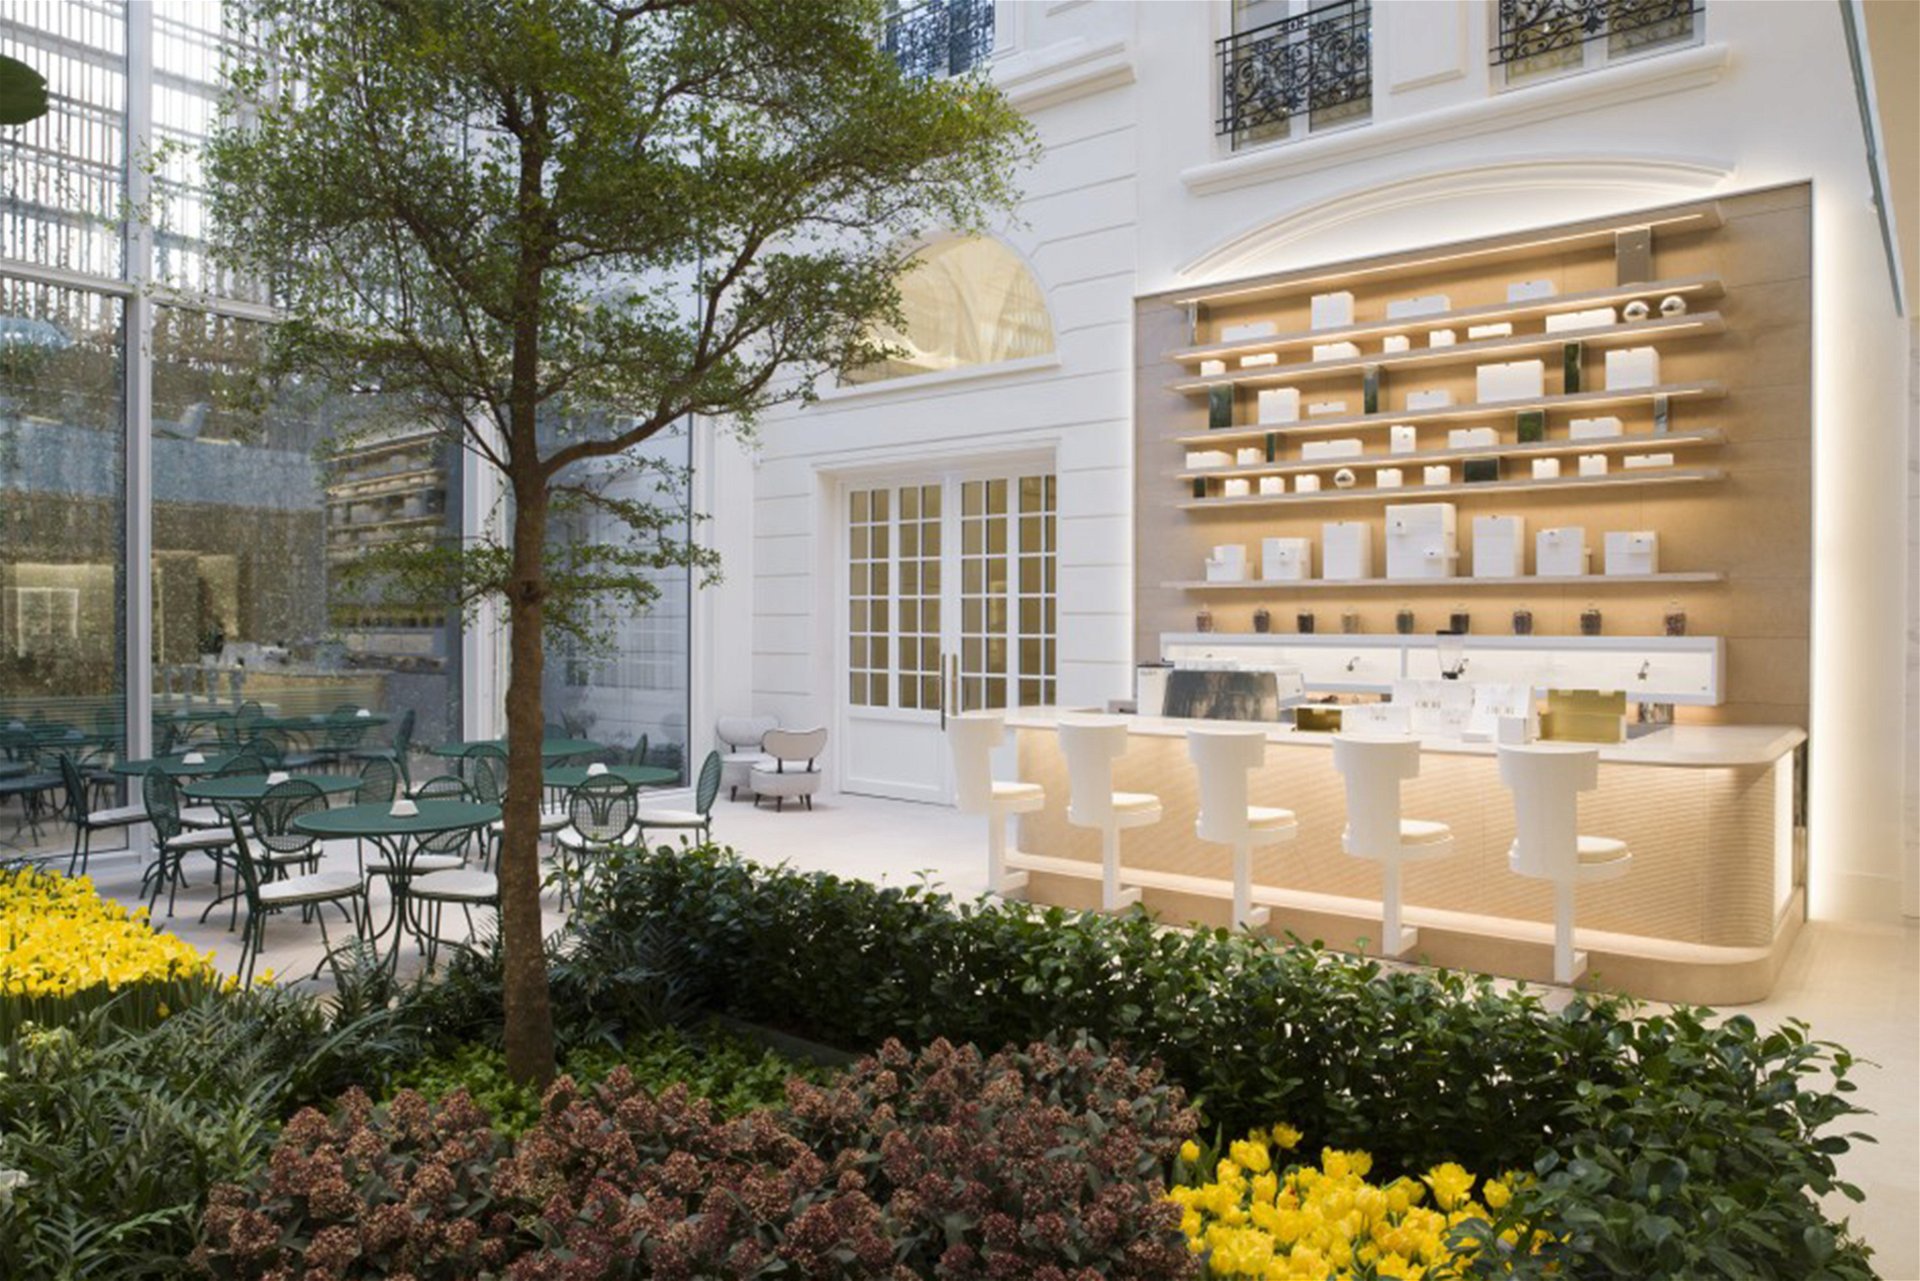 Ultimativen Genuss erlebt man in der Pâtisserie Dior, die einen sinnlichen Rosengarten überblickt. Hier werden die bekanntesten französischen Kuchen von Jean Imbert neu interpretiert.